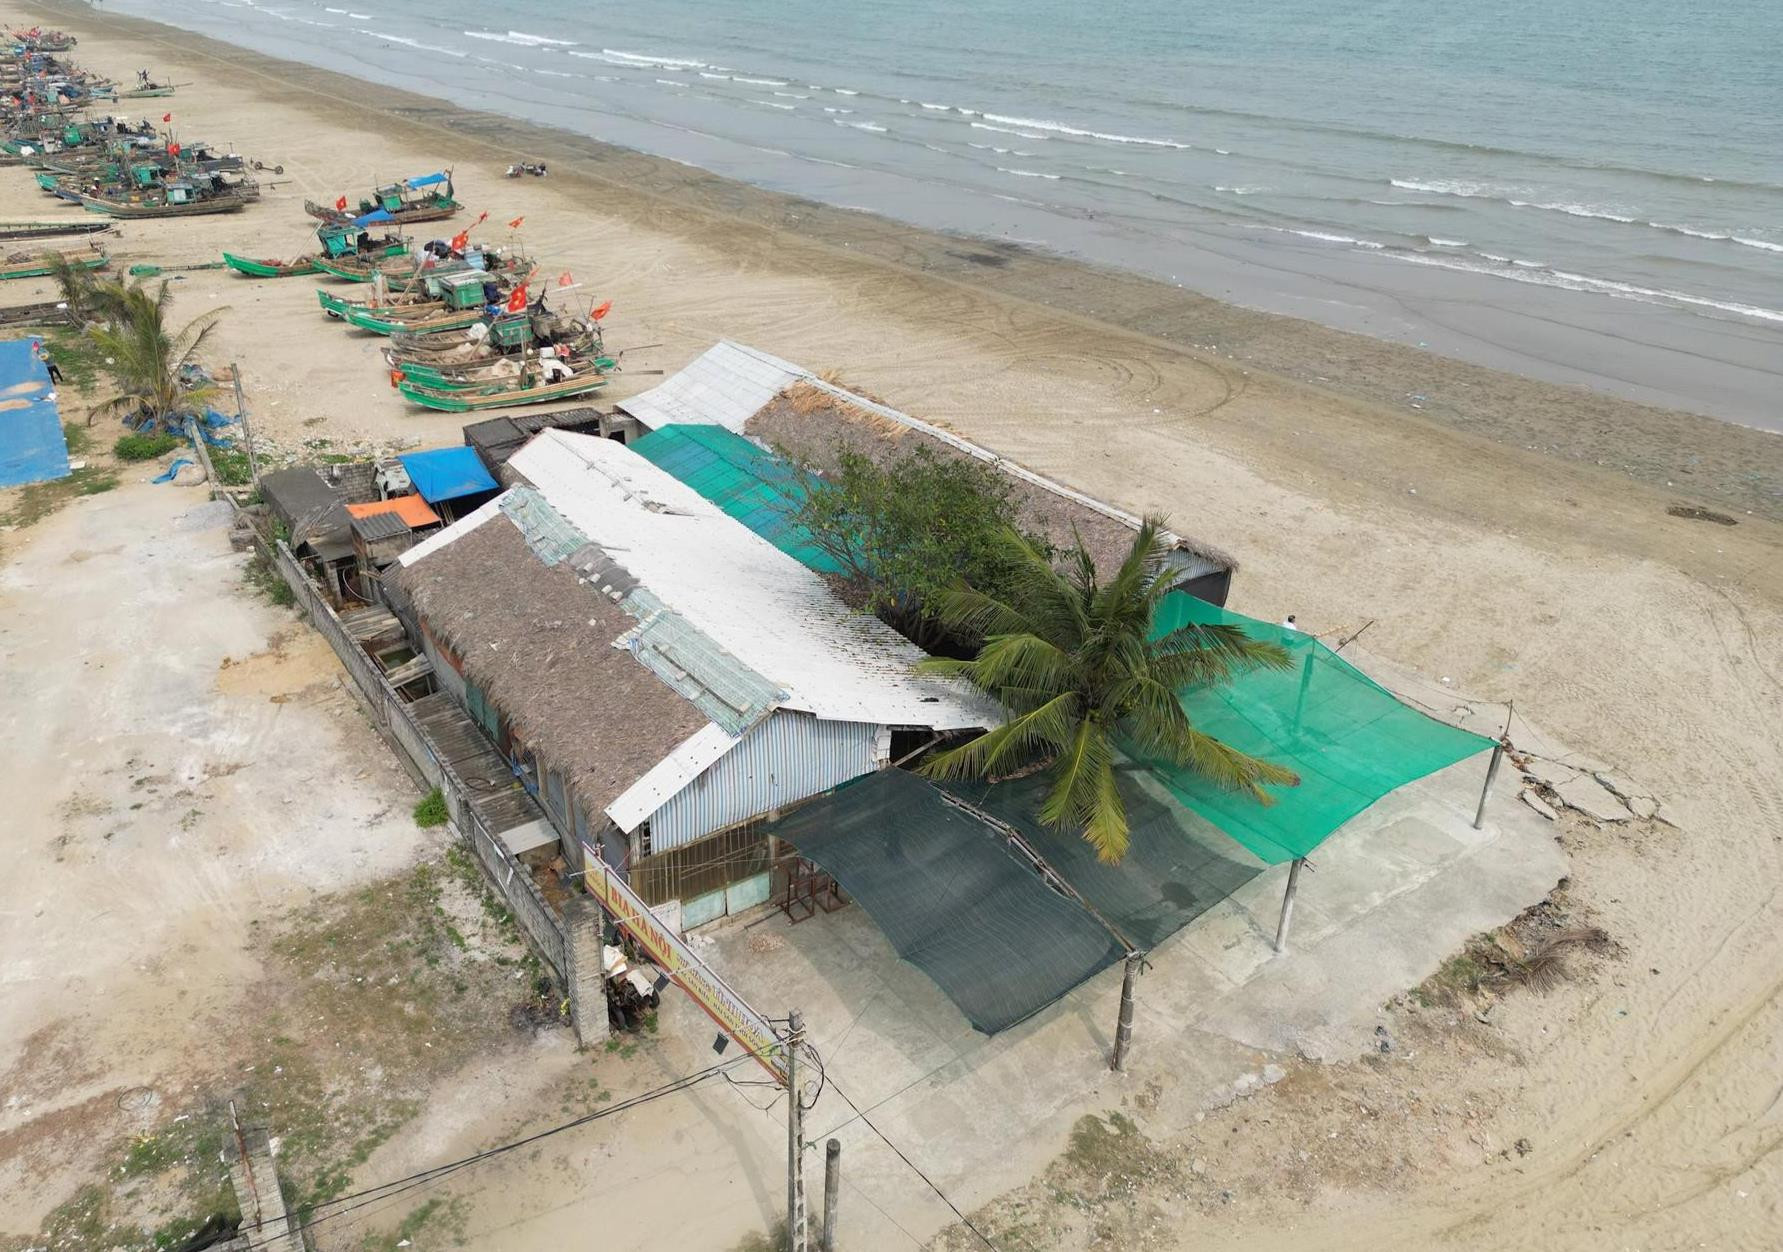 Sầm Sơn (Thanh Hóa): Vì sao chưa xử lý nhà hàng xây dựng trái phép trên bờ biển?